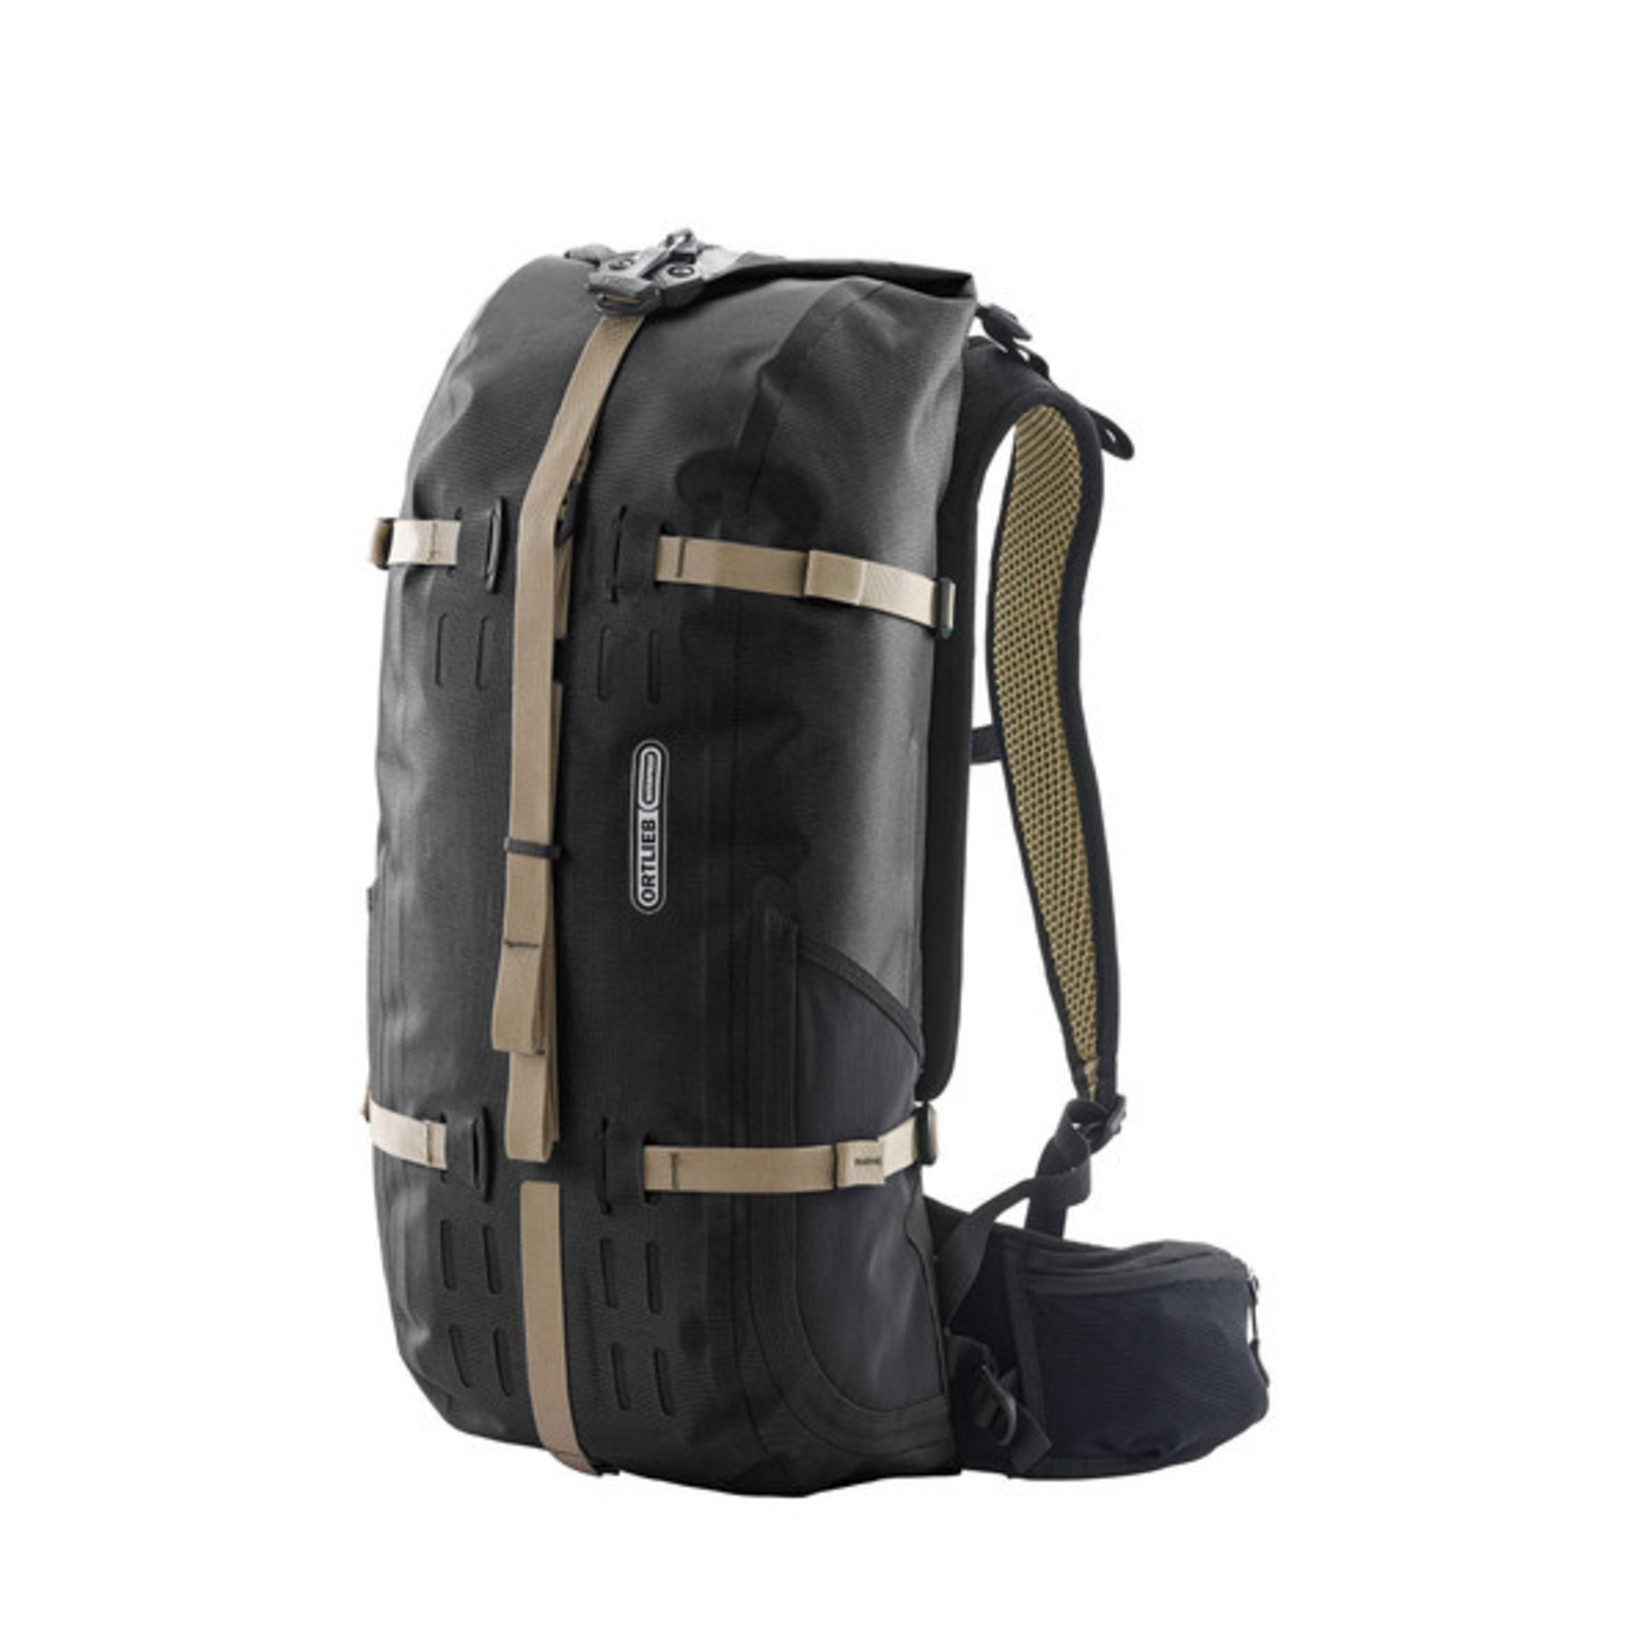 Ortlieb New Ortlieb Atrack Waterproof Backpack Travel Bag R7004 - 25L - Black